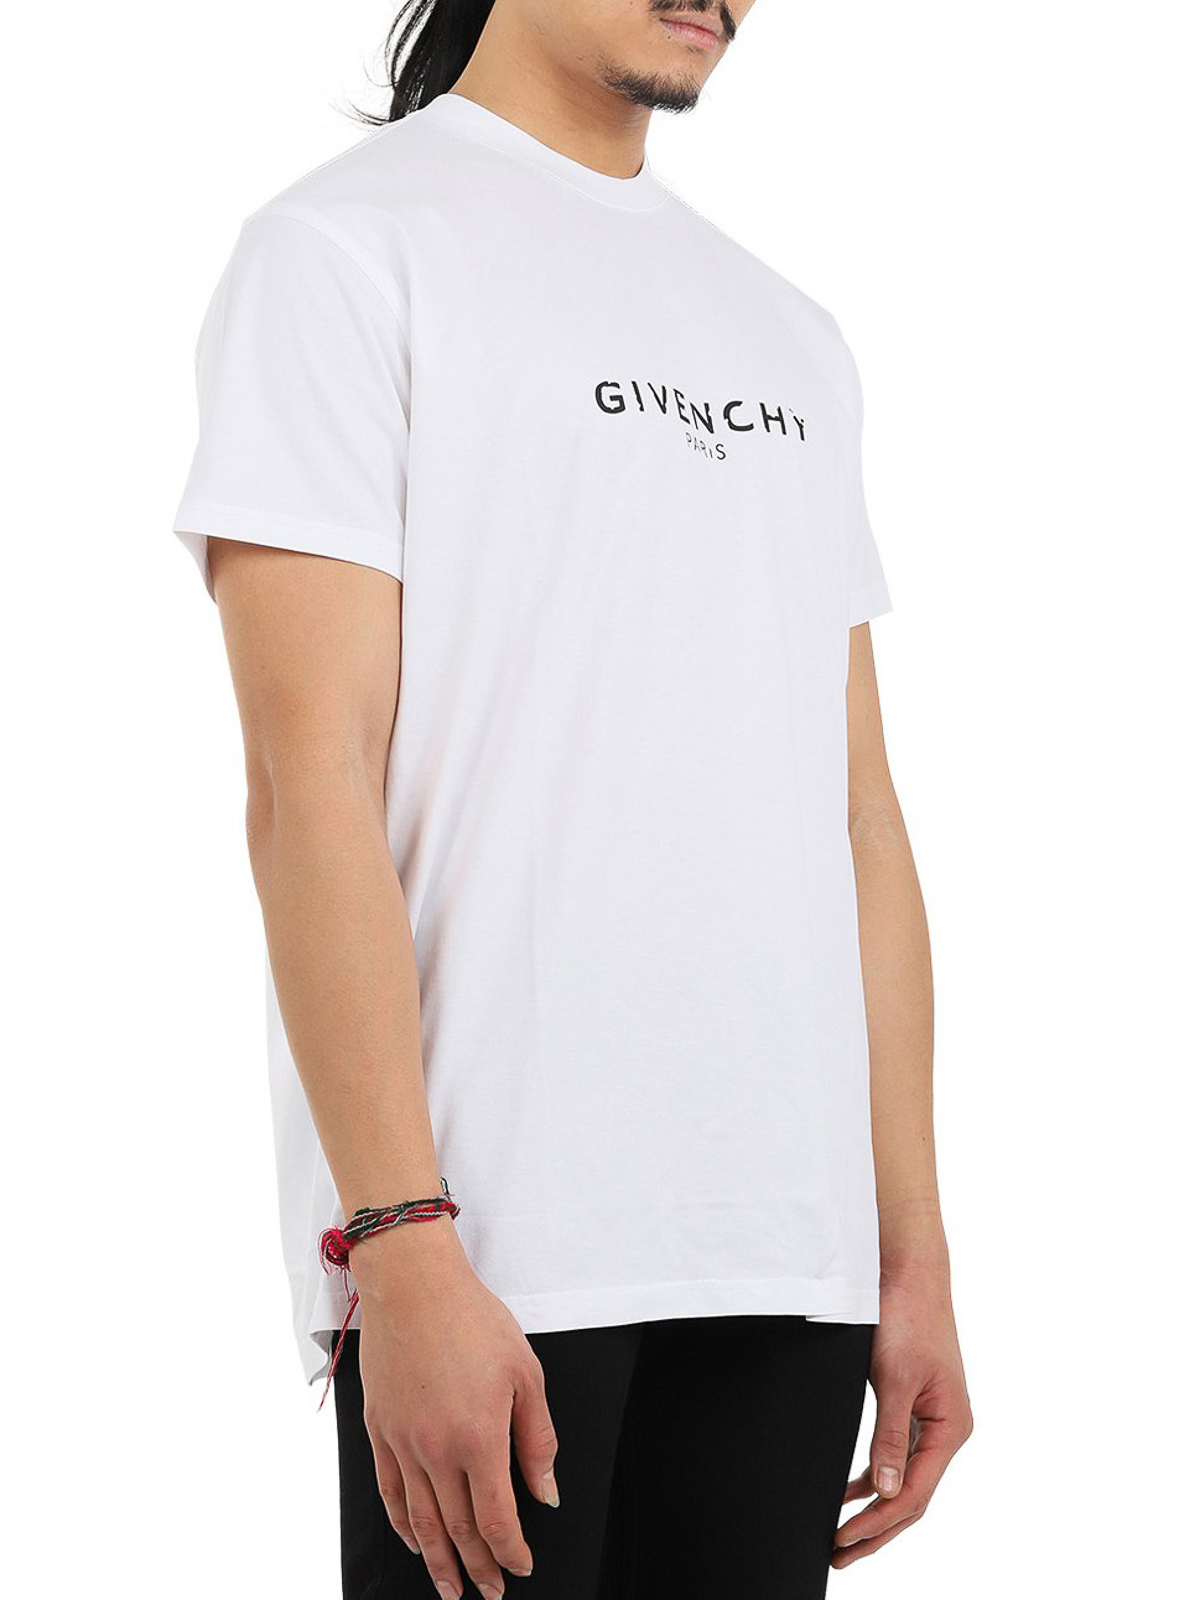 givenchy t shirt